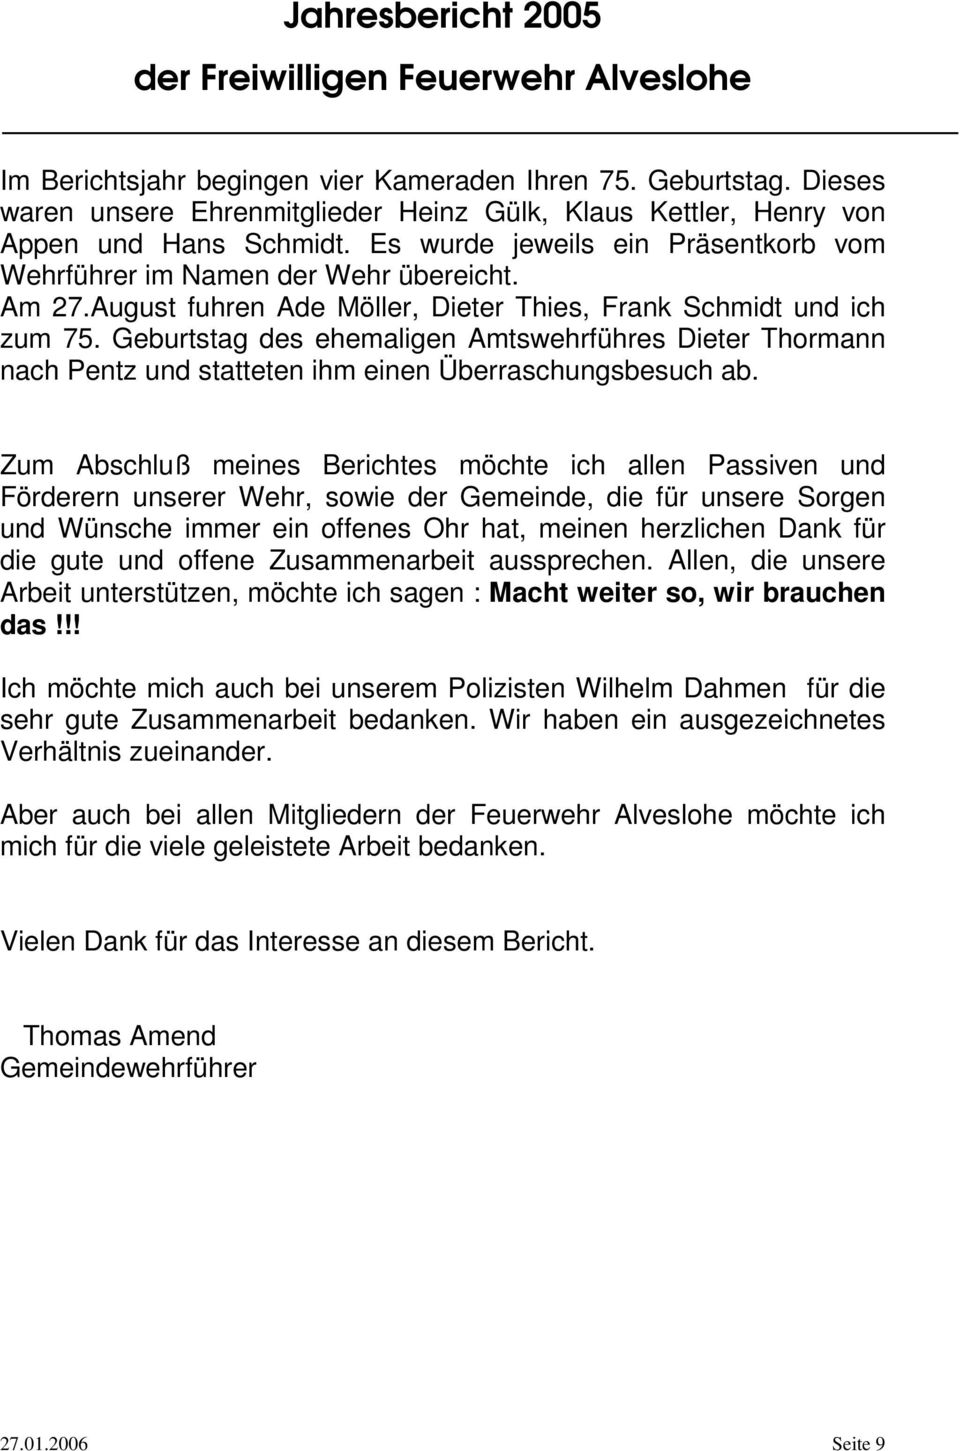 Geburtstag des ehemaligen Amtswehrführes Dieter Thormann nach Pentz und statteten ihm einen Überraschungsbesuch ab.